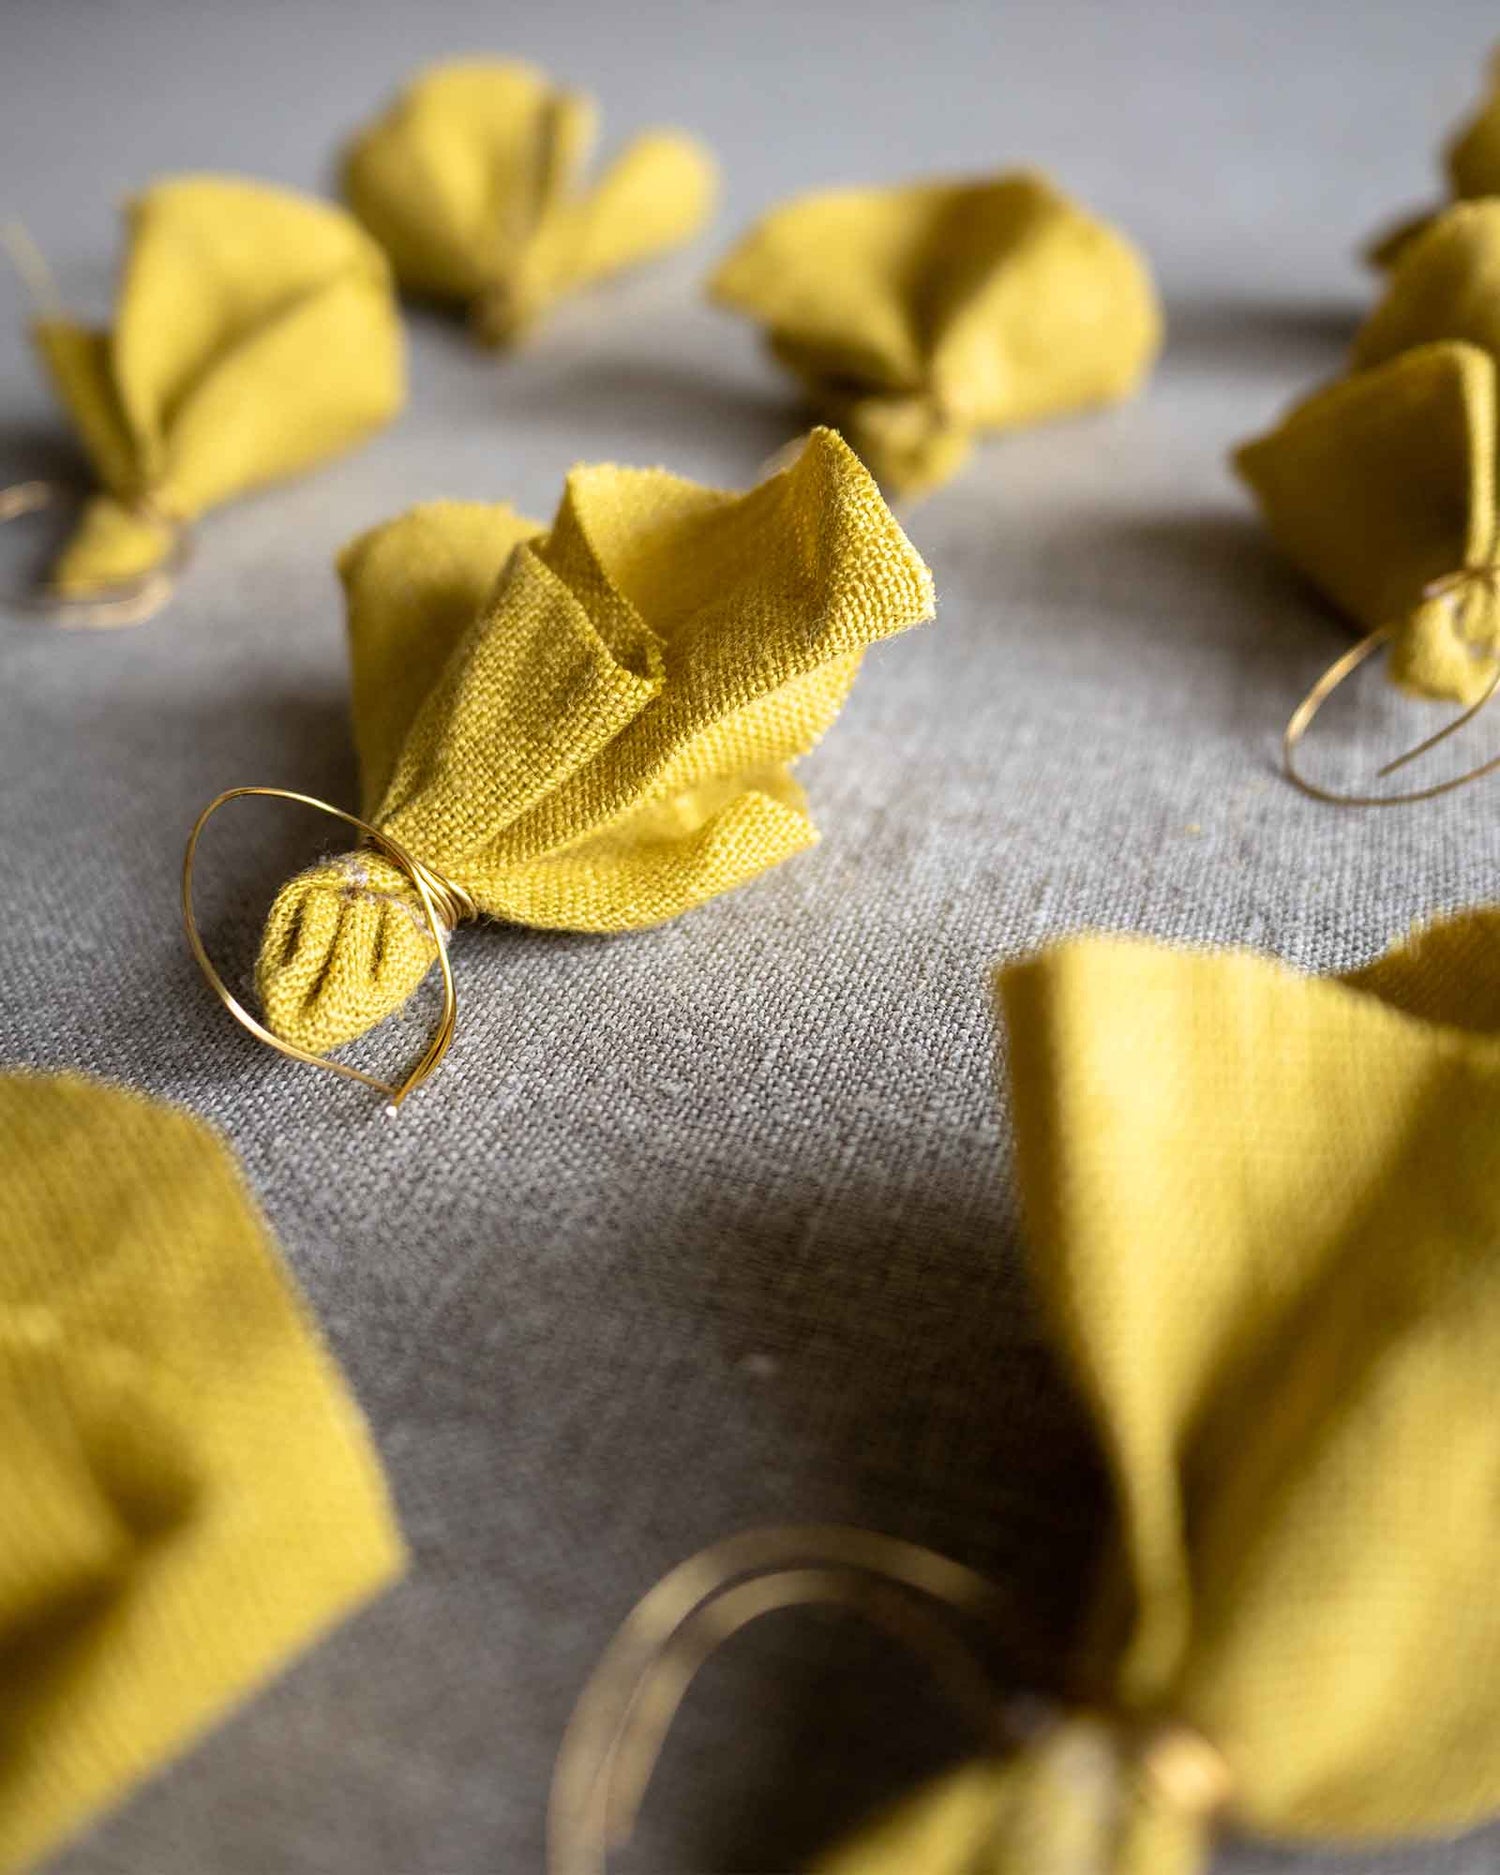 Åtta stycken handsydda tygblommor i gult linne med ståltråd ligger på en plan yta. 